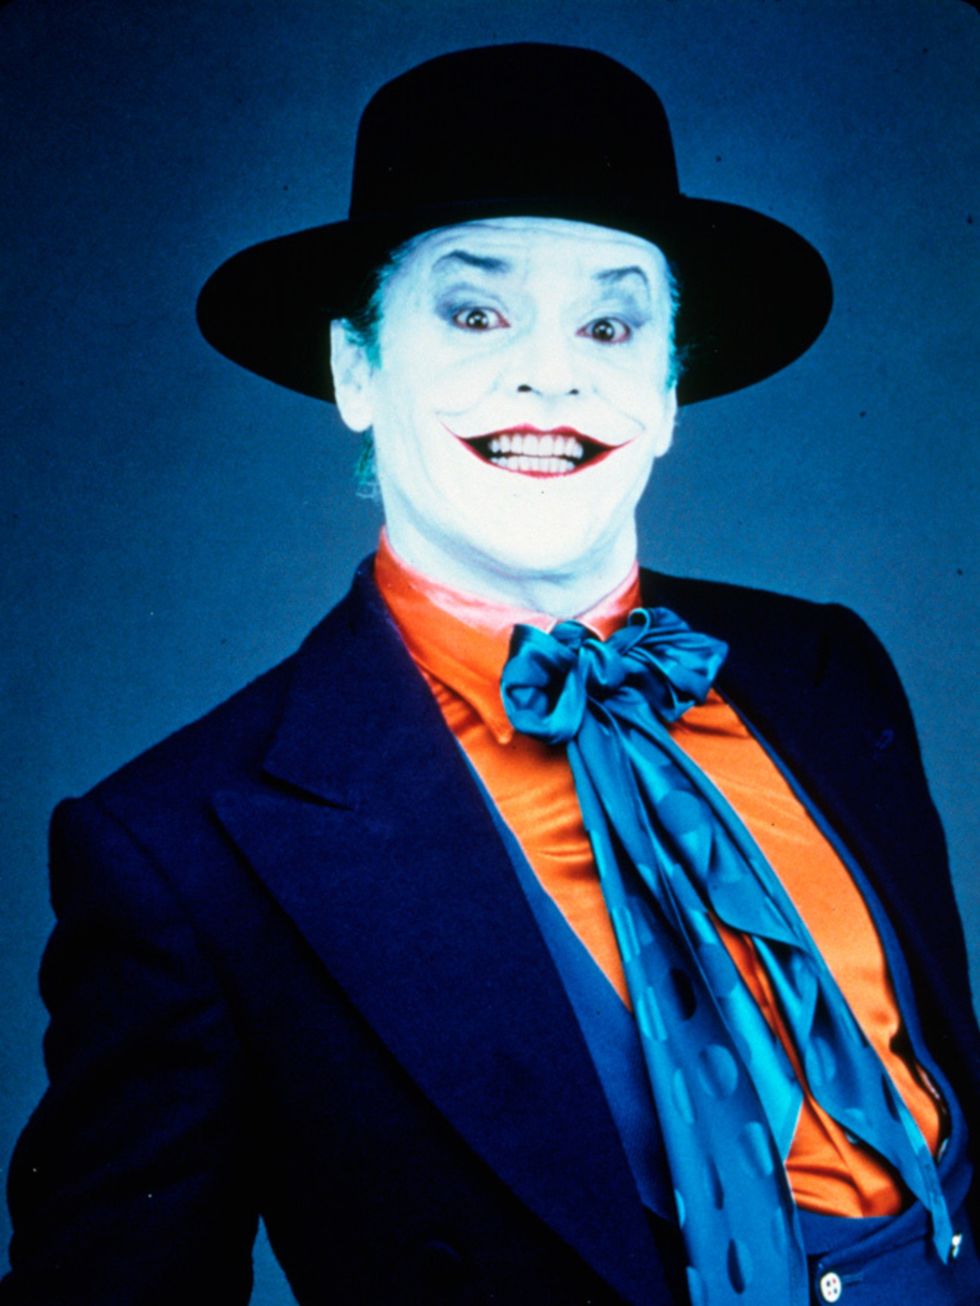 <p>Jack Nicholson as Joker in Batman (1989)</p>